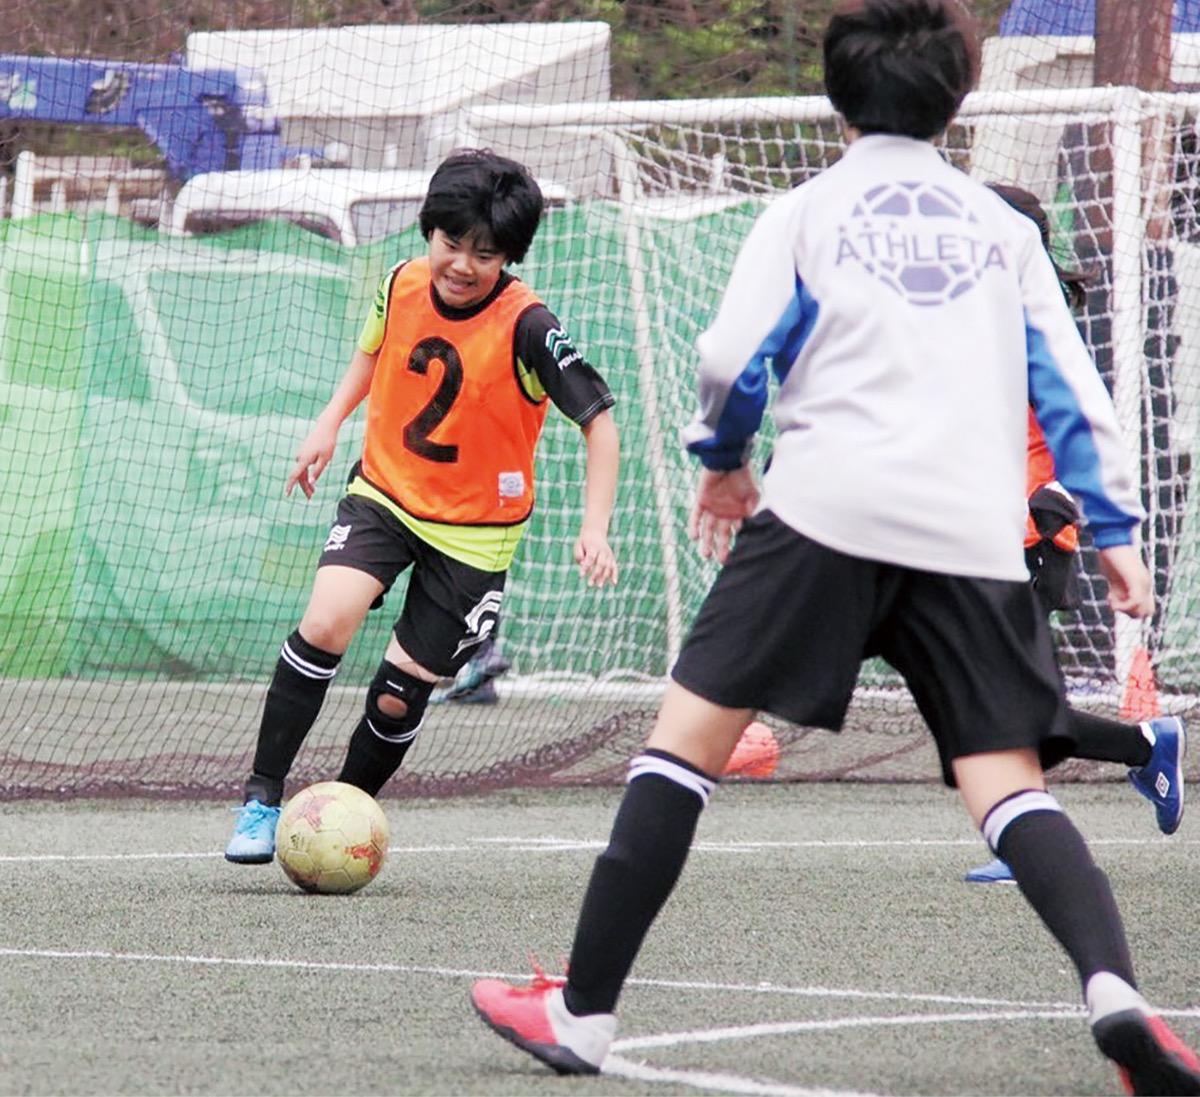 女子サッカー普及拡大へ 多様な受け皿 地元チームが本腰 横須賀 タウンニュース